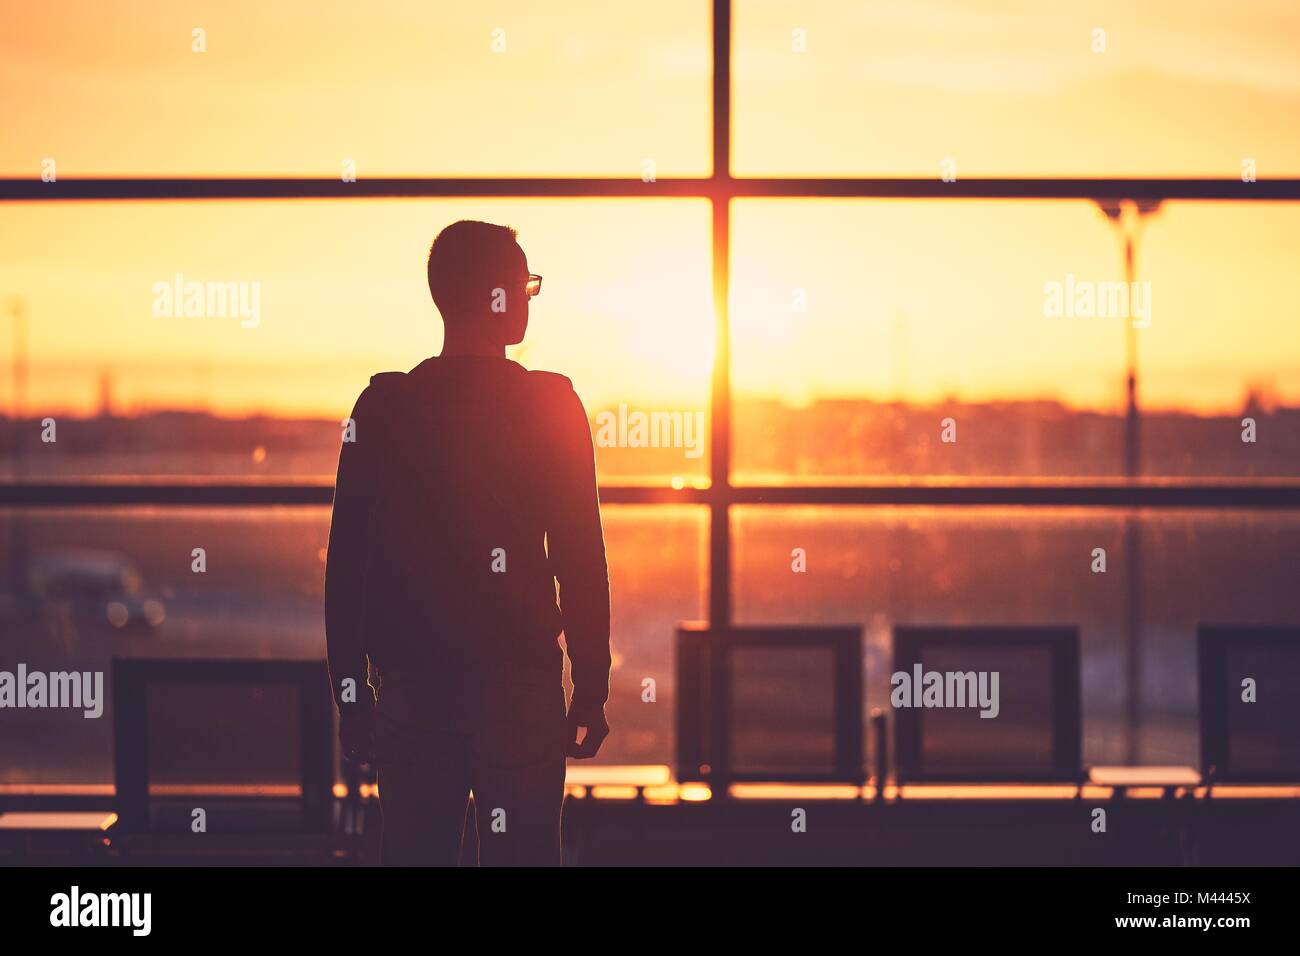 Silhouette der junge Mann am Flughafen. Traveler Blätter zum Tor während der goldenen Sonnenuntergang. Stockfoto